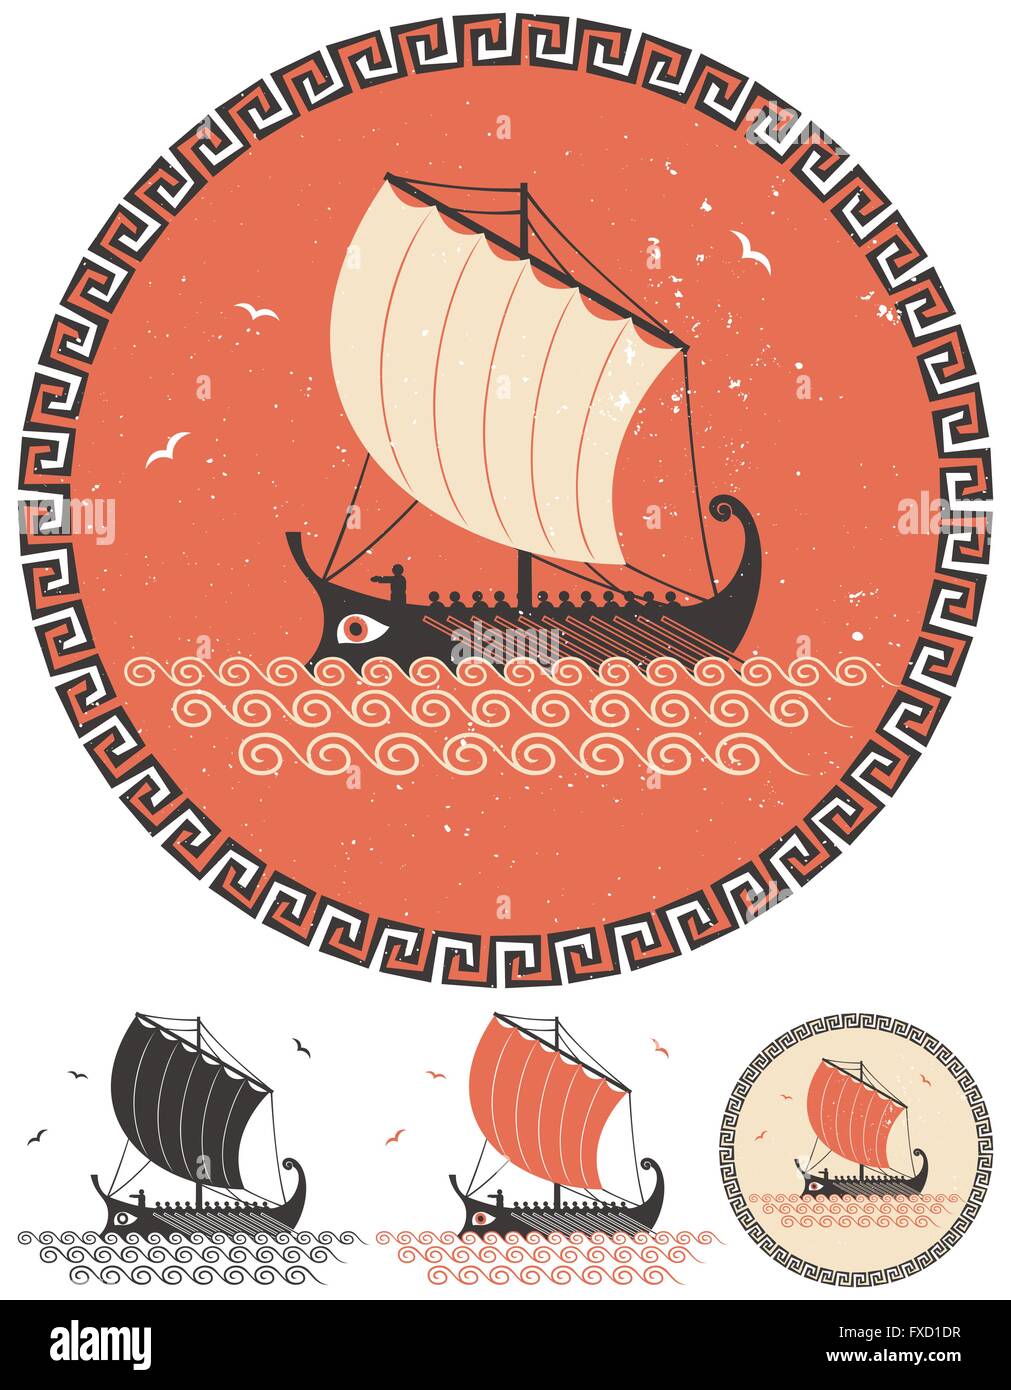 Illustrazione stilizzata di antica nave greca in 4 diverse versioni. Illustrazione Vettoriale